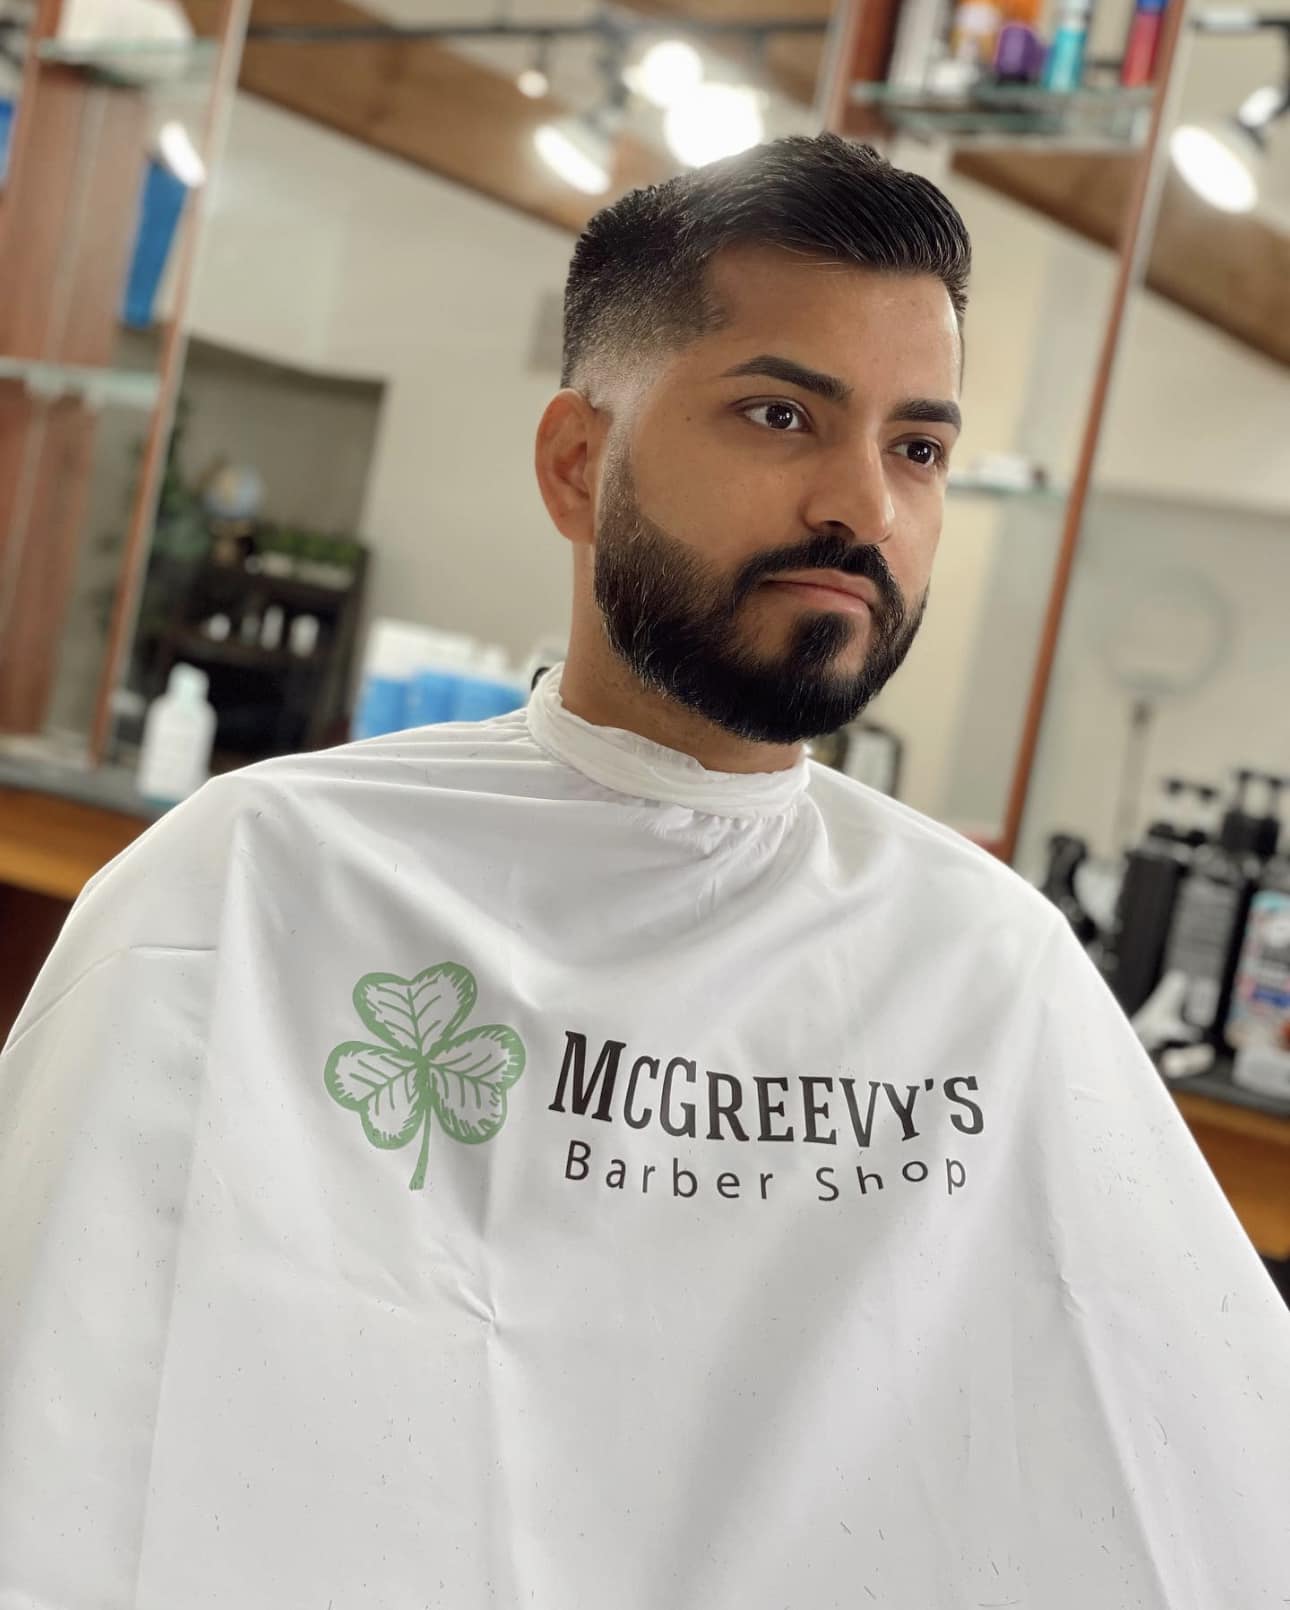 Mcgreevy's Barber Shop 601 Main St, Holden Massachusetts 01520